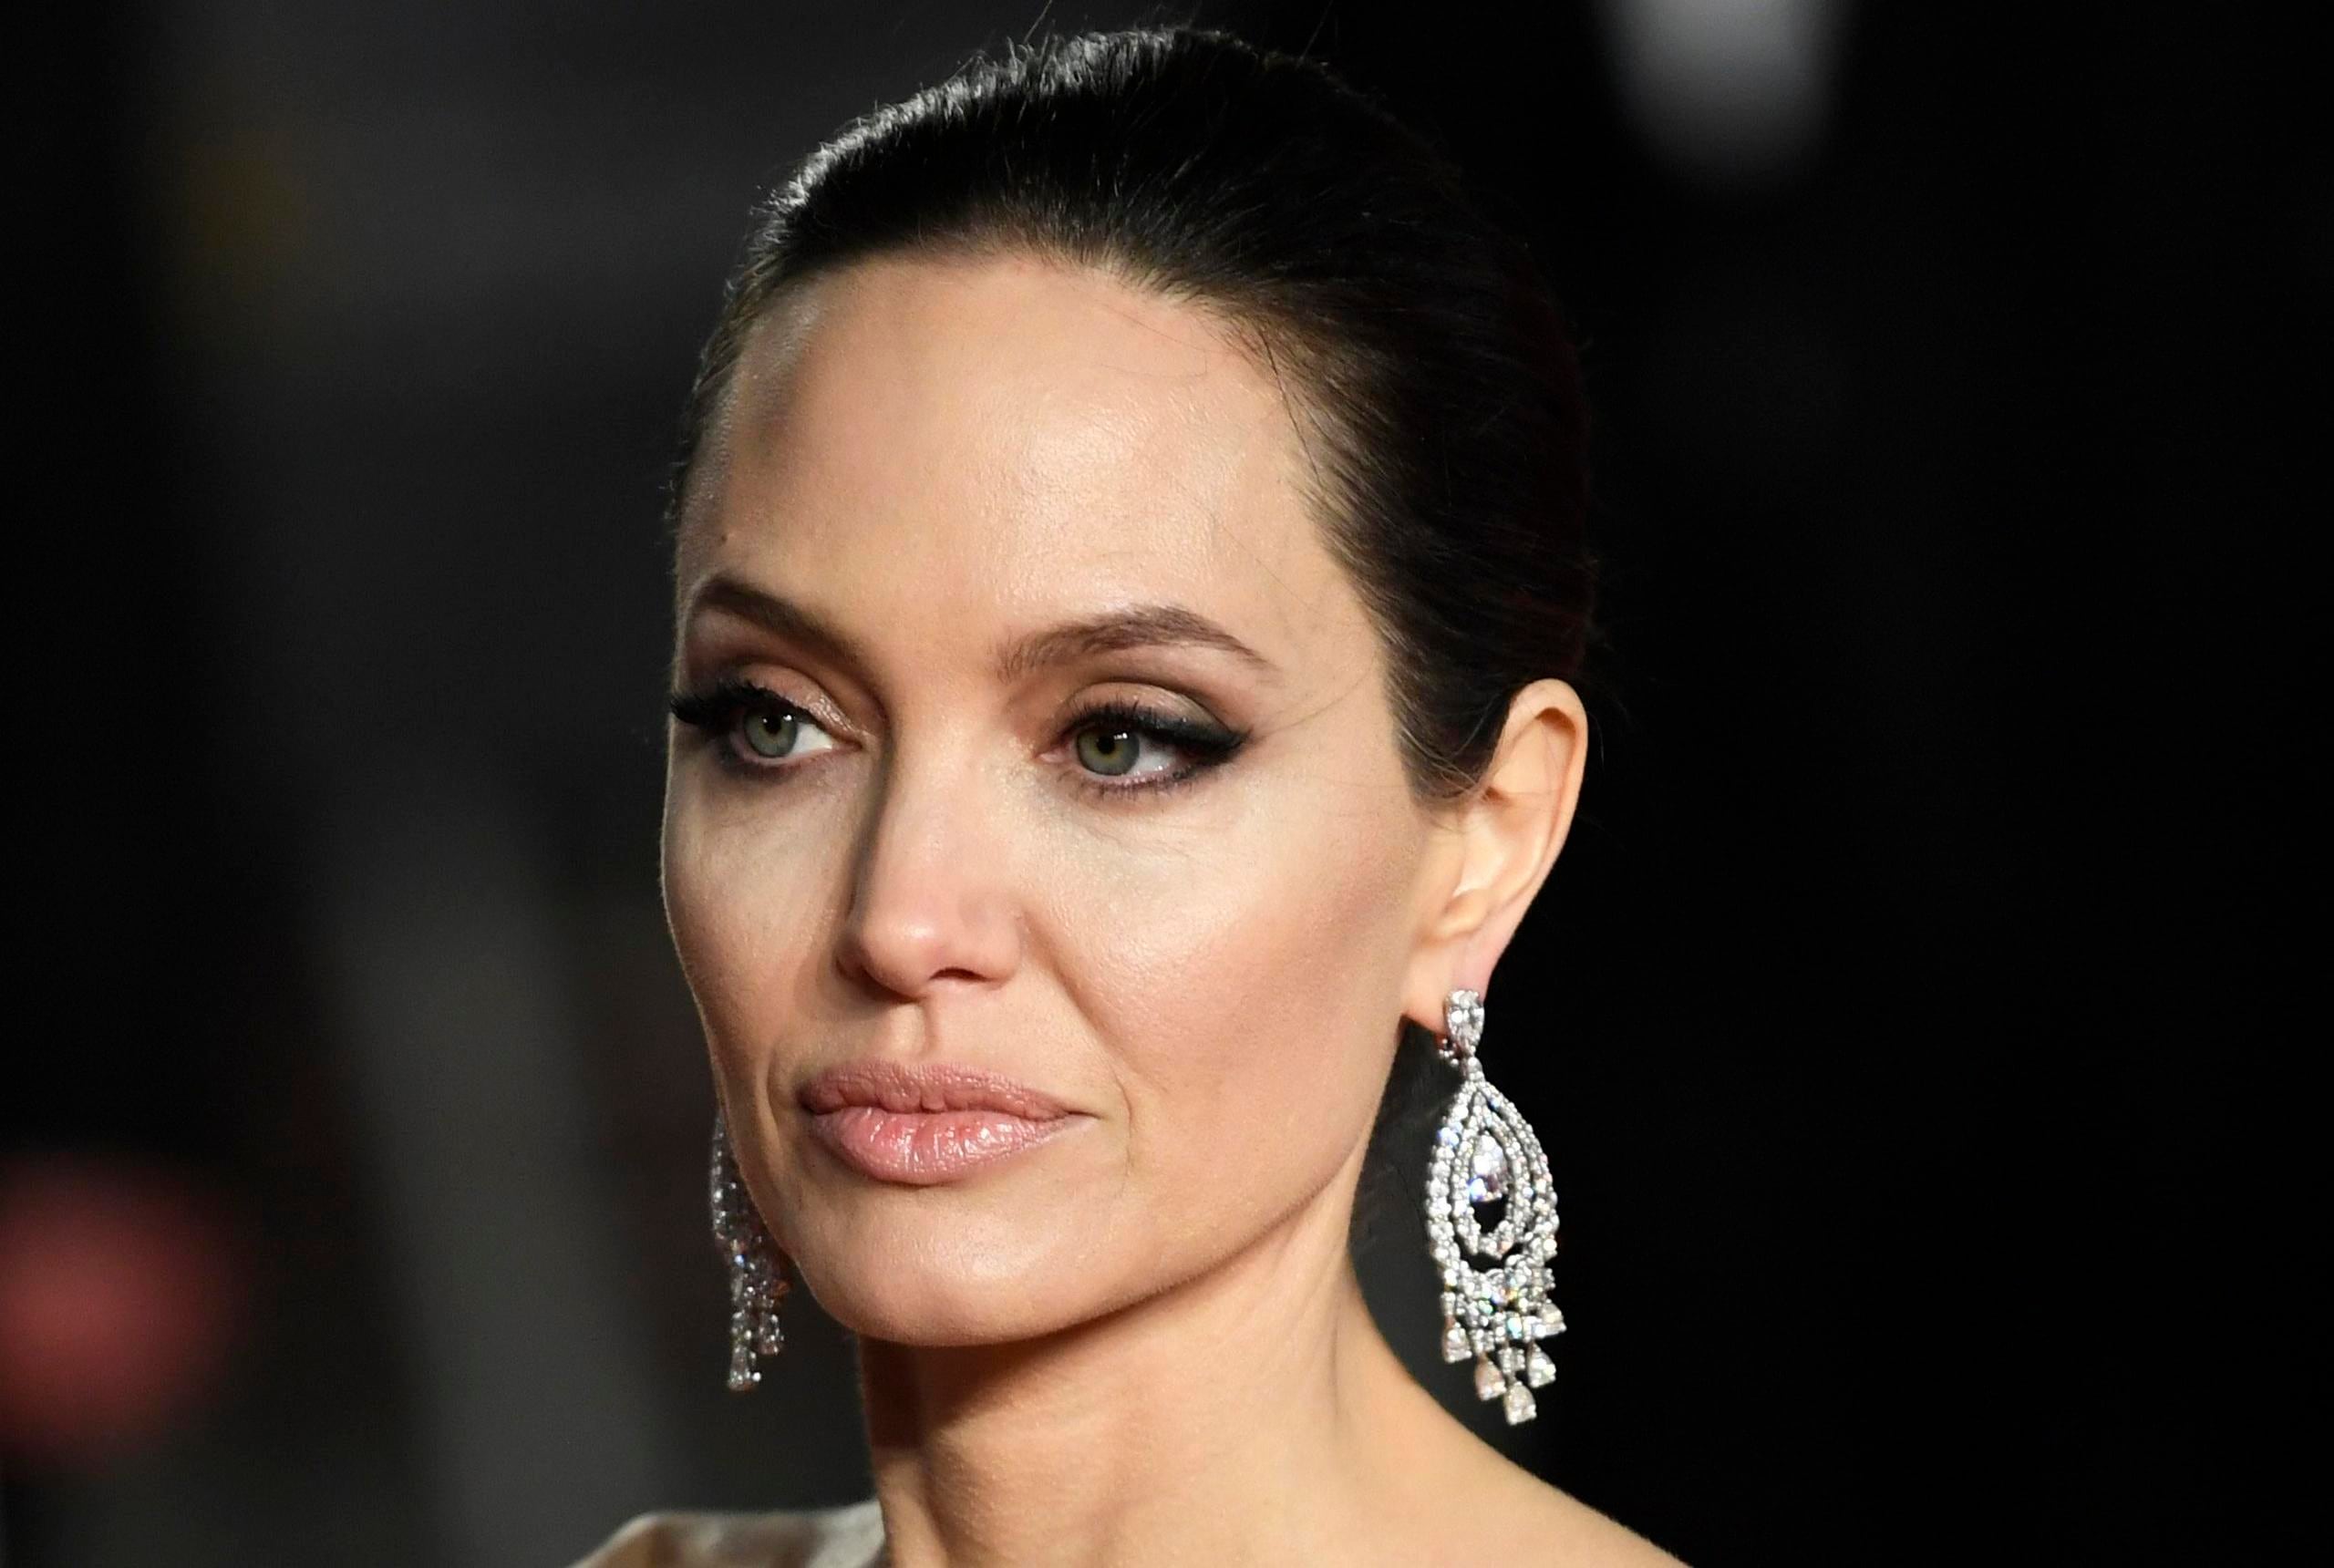 Angelina Jolie acusó a su exesposo Brad Pitt de "librar una guerra vengativa contra ella" y de "secuestrar" el control del lucrativo negocio de bodegas que una vez compartieron.